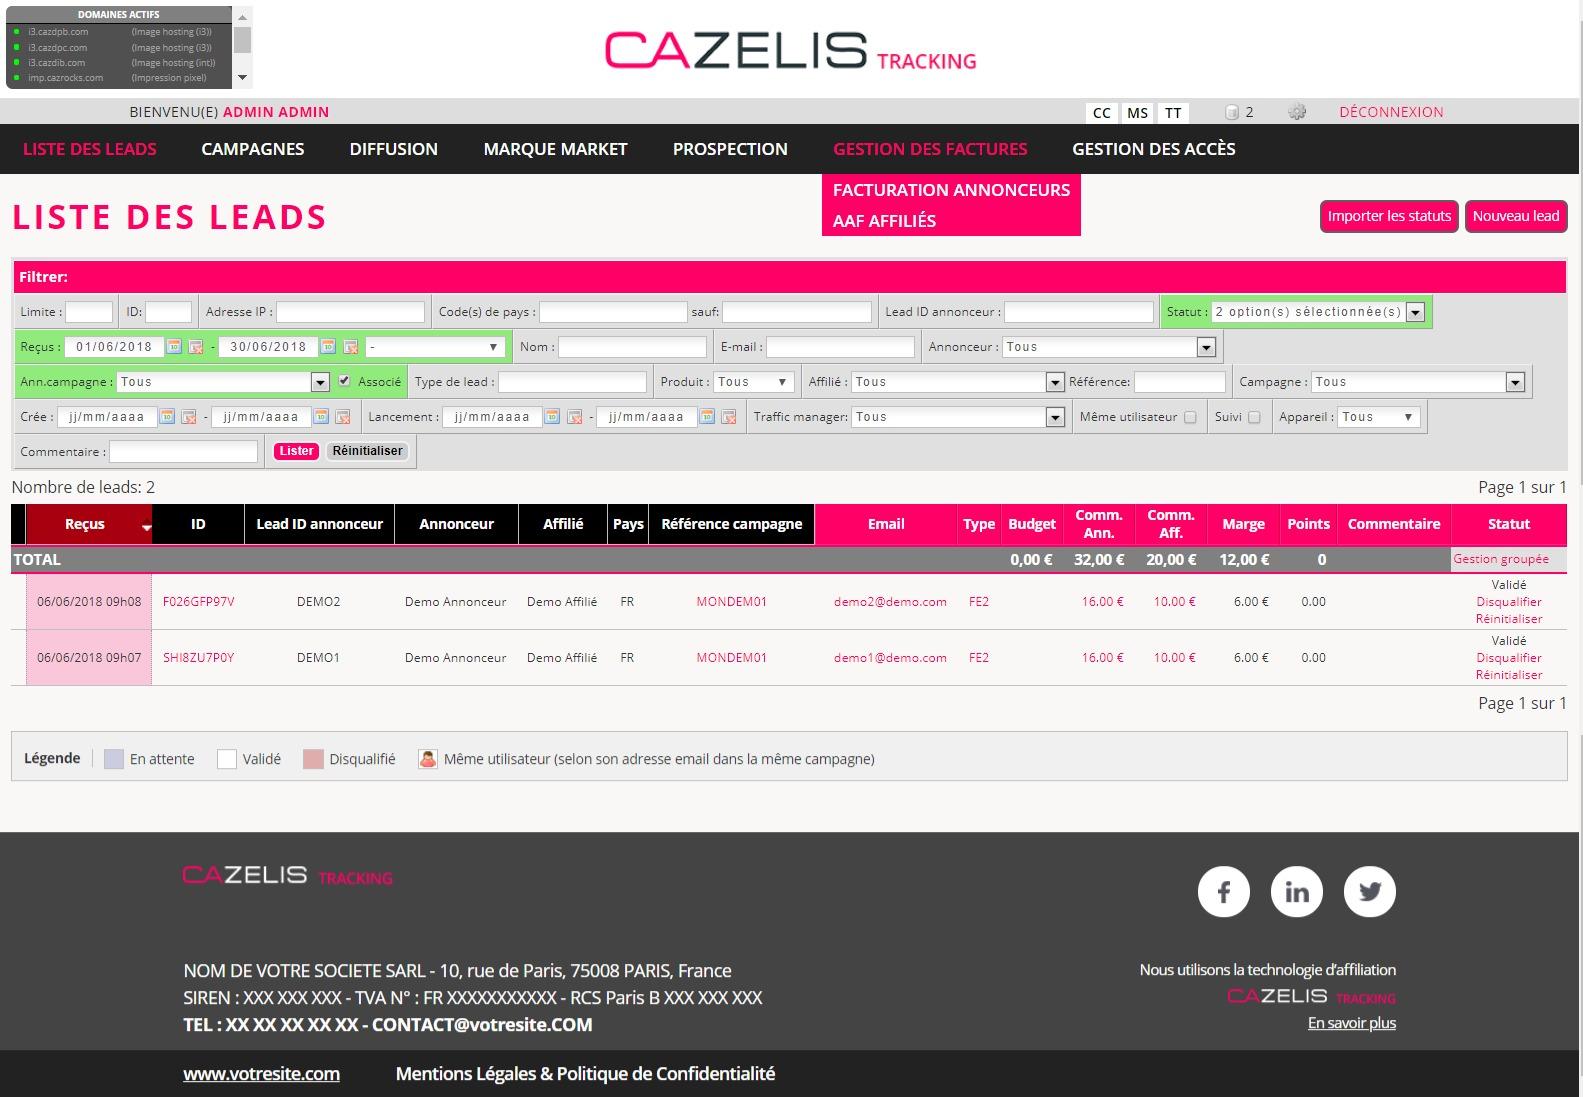 CAZELIS Tracking - Suivez en temps réel l'activité de votre entreprise